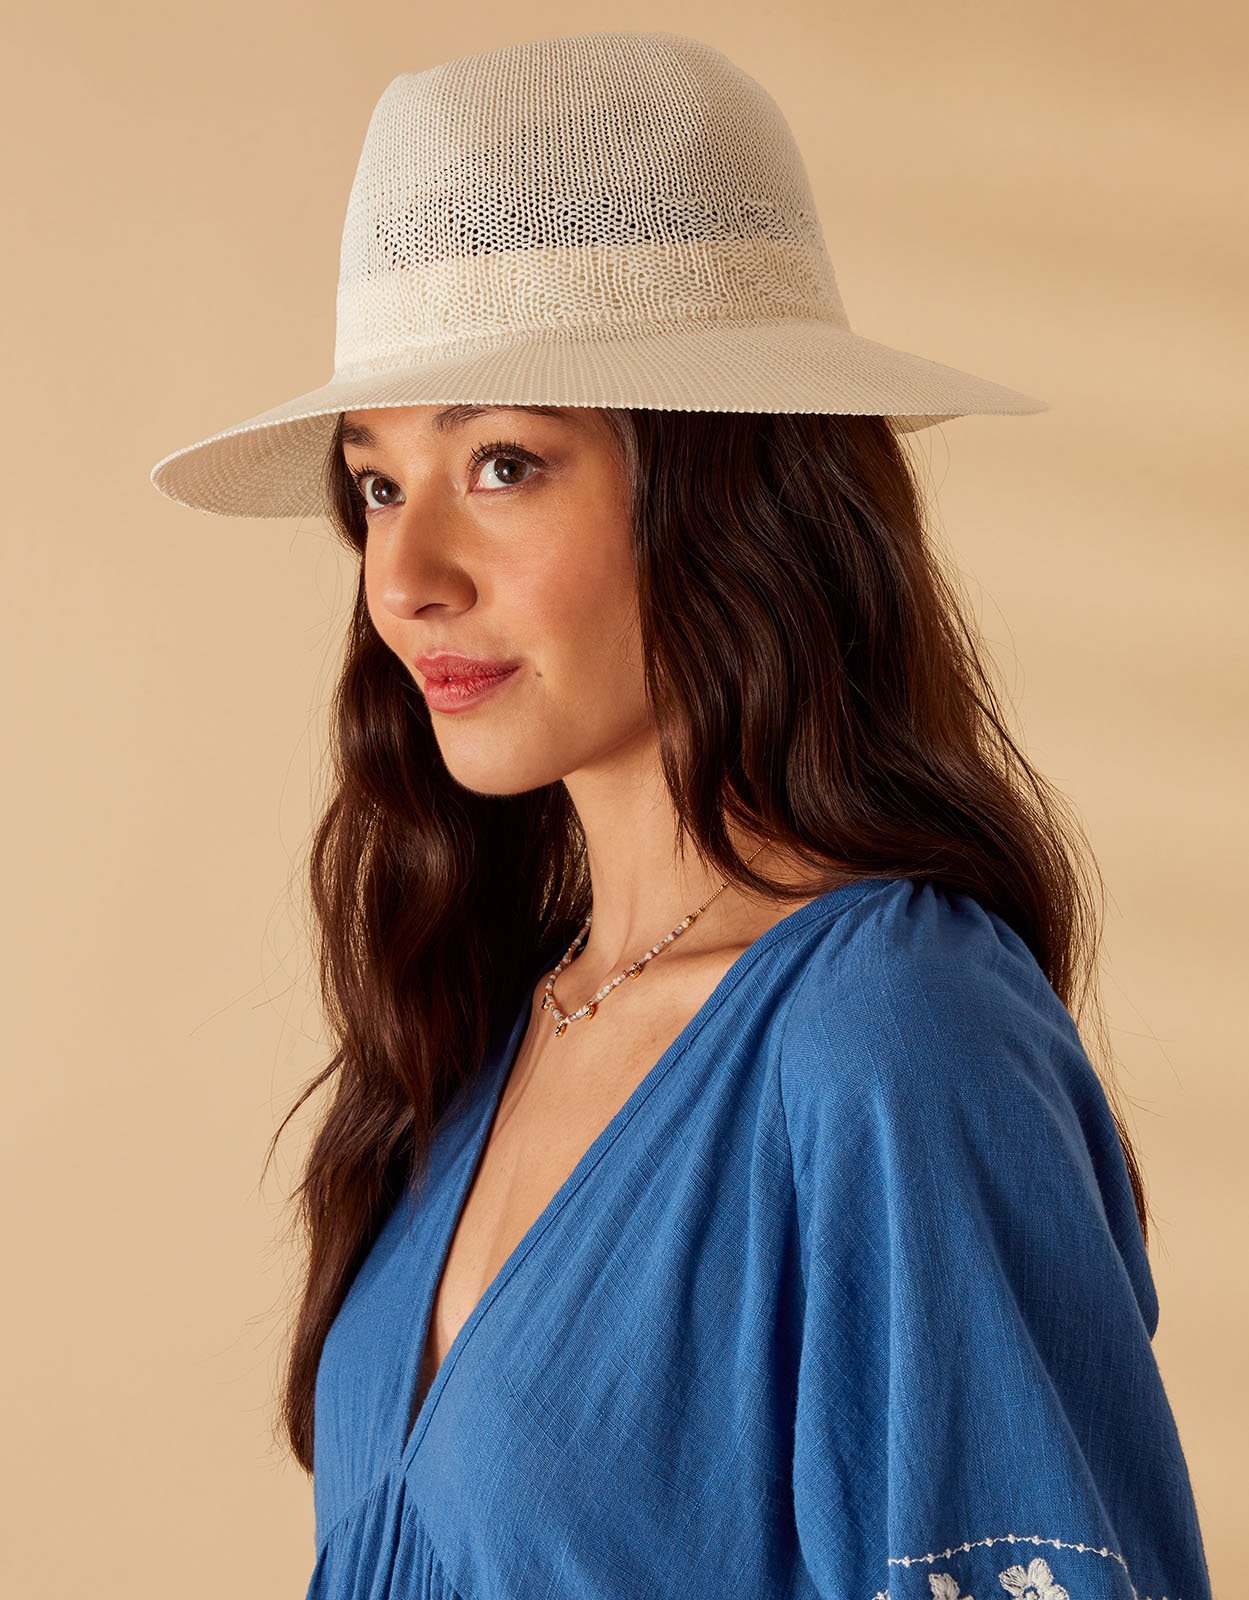 Accessorize Women's Packable Fedora Hat Cream, Size: M / L